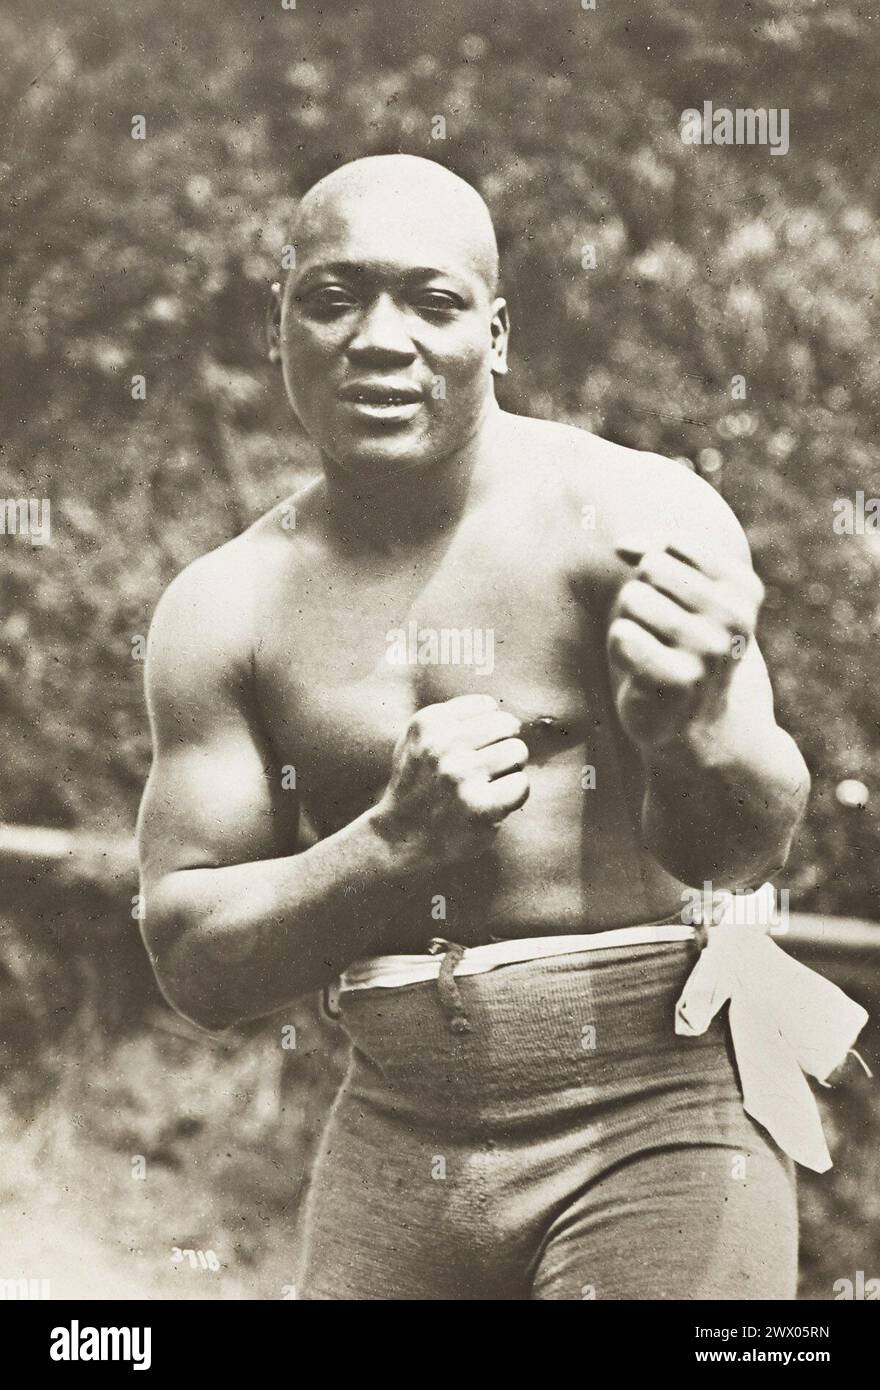 Pugile afroamericano e campione mondiale dei pesi massimi, Jack Johnson, 1909 circa Foto Stock